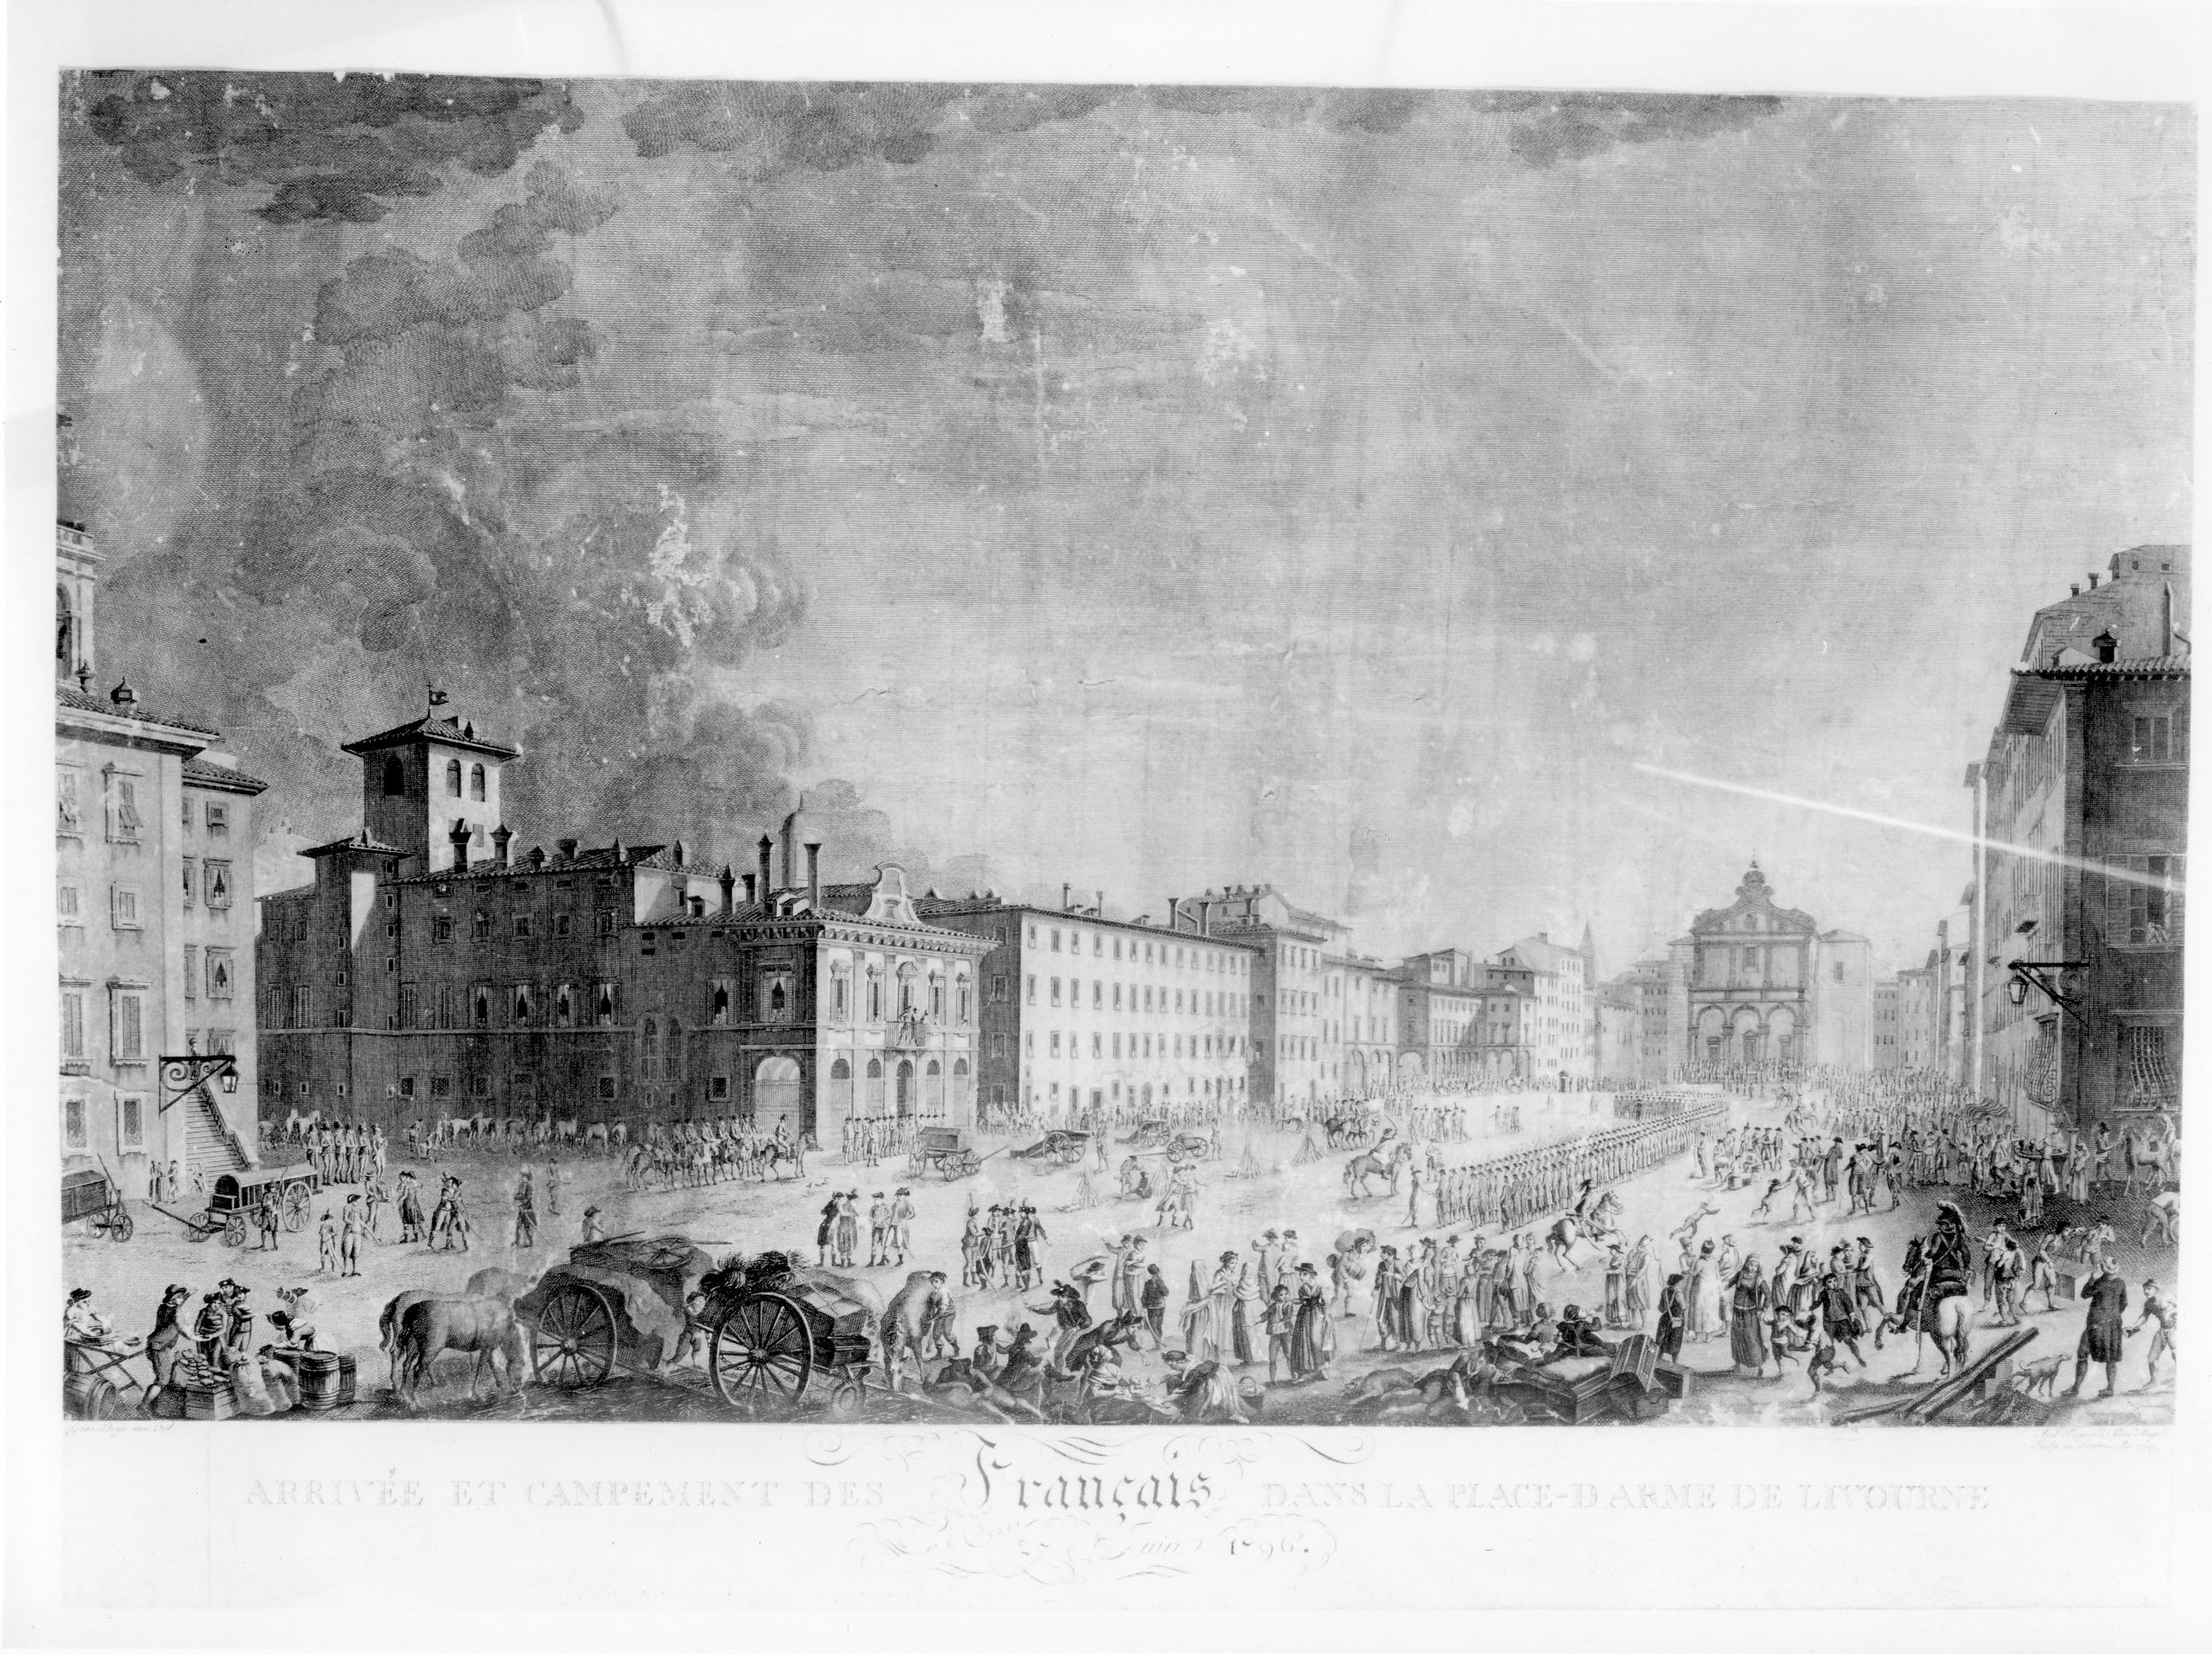 Arrivée et campement des francais dans la Place de Livorne 27 Juin 1796, veduta di città (stampa) di Beys G, Poggioli Antonio, Angeli Giuseppe (sec. XVIII)